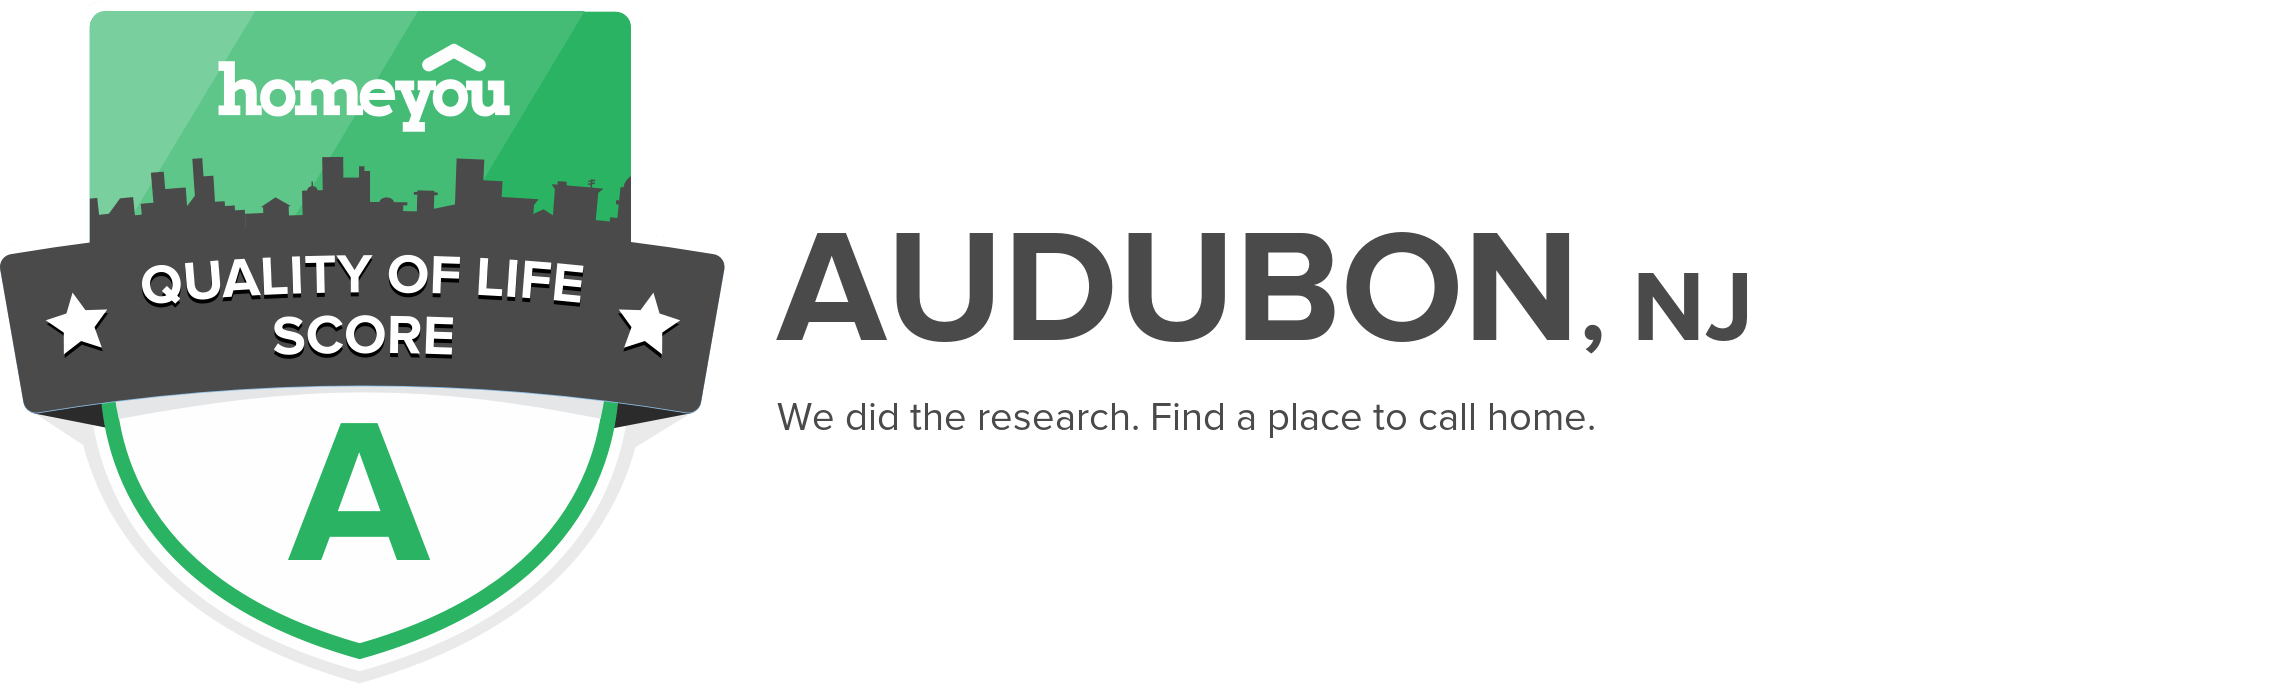 Audubon, NJ